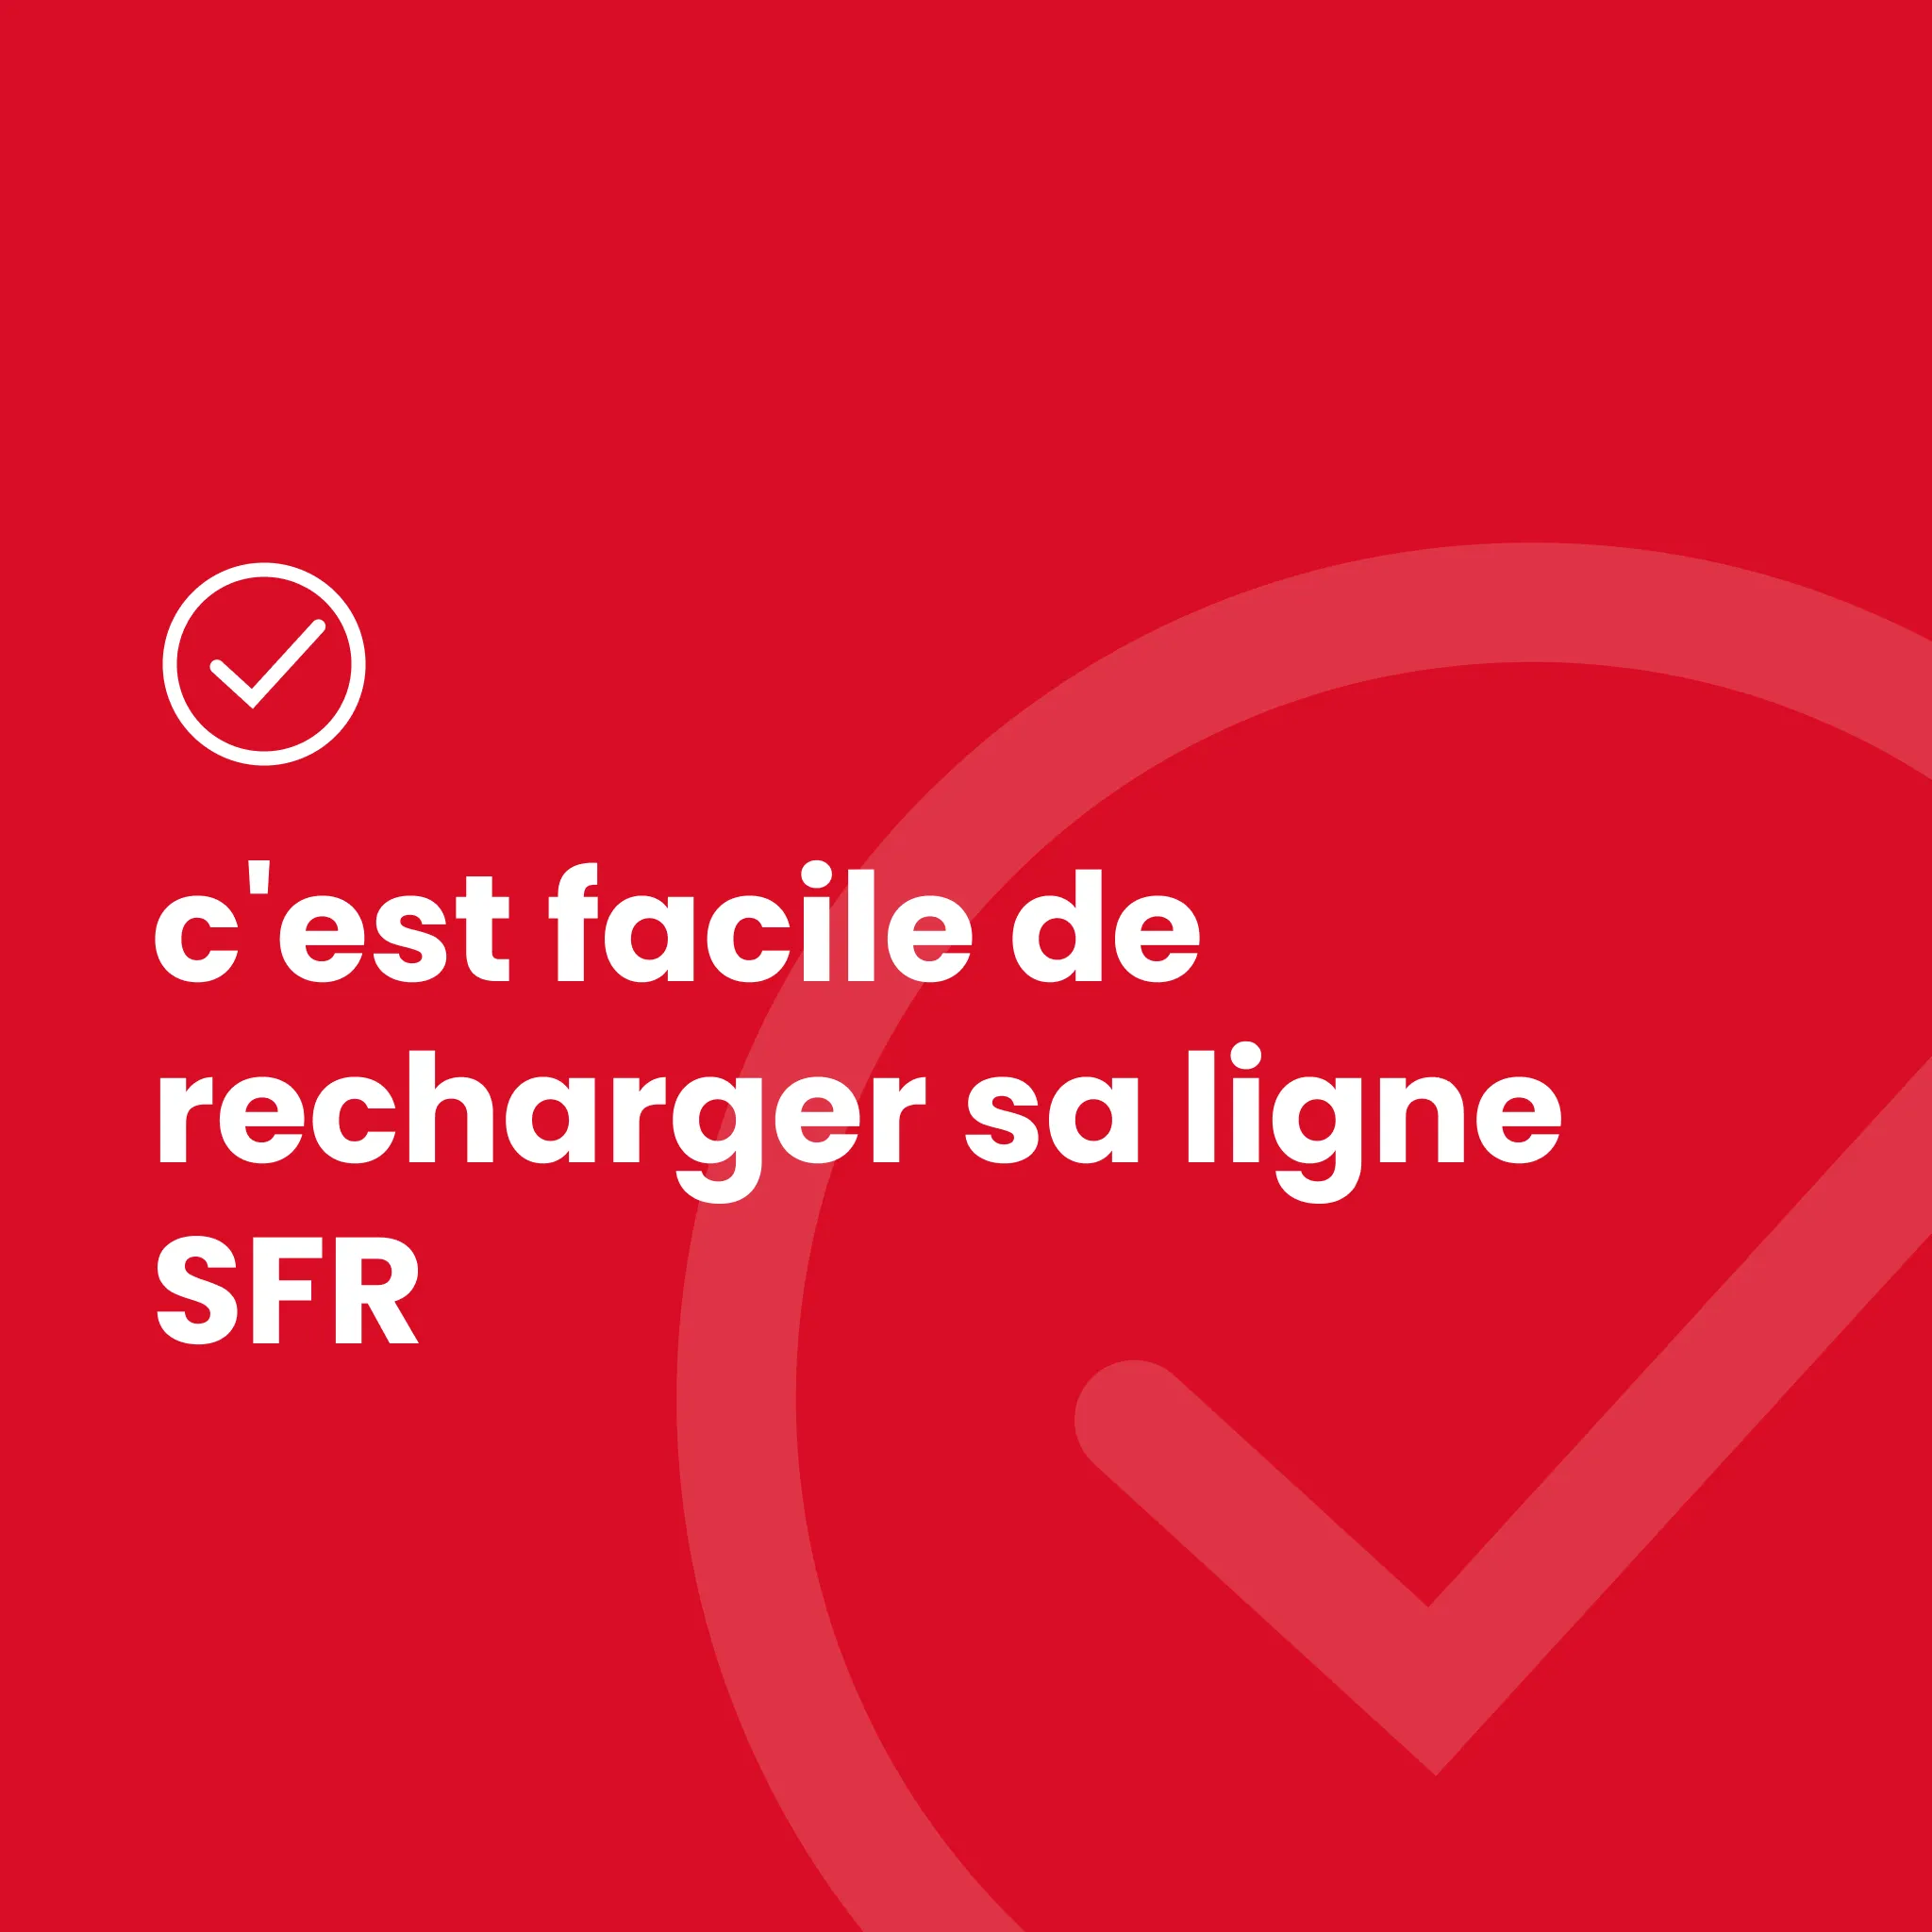 Recharge SFR La Carte Illimitée 19,99€ - Click and Recharge